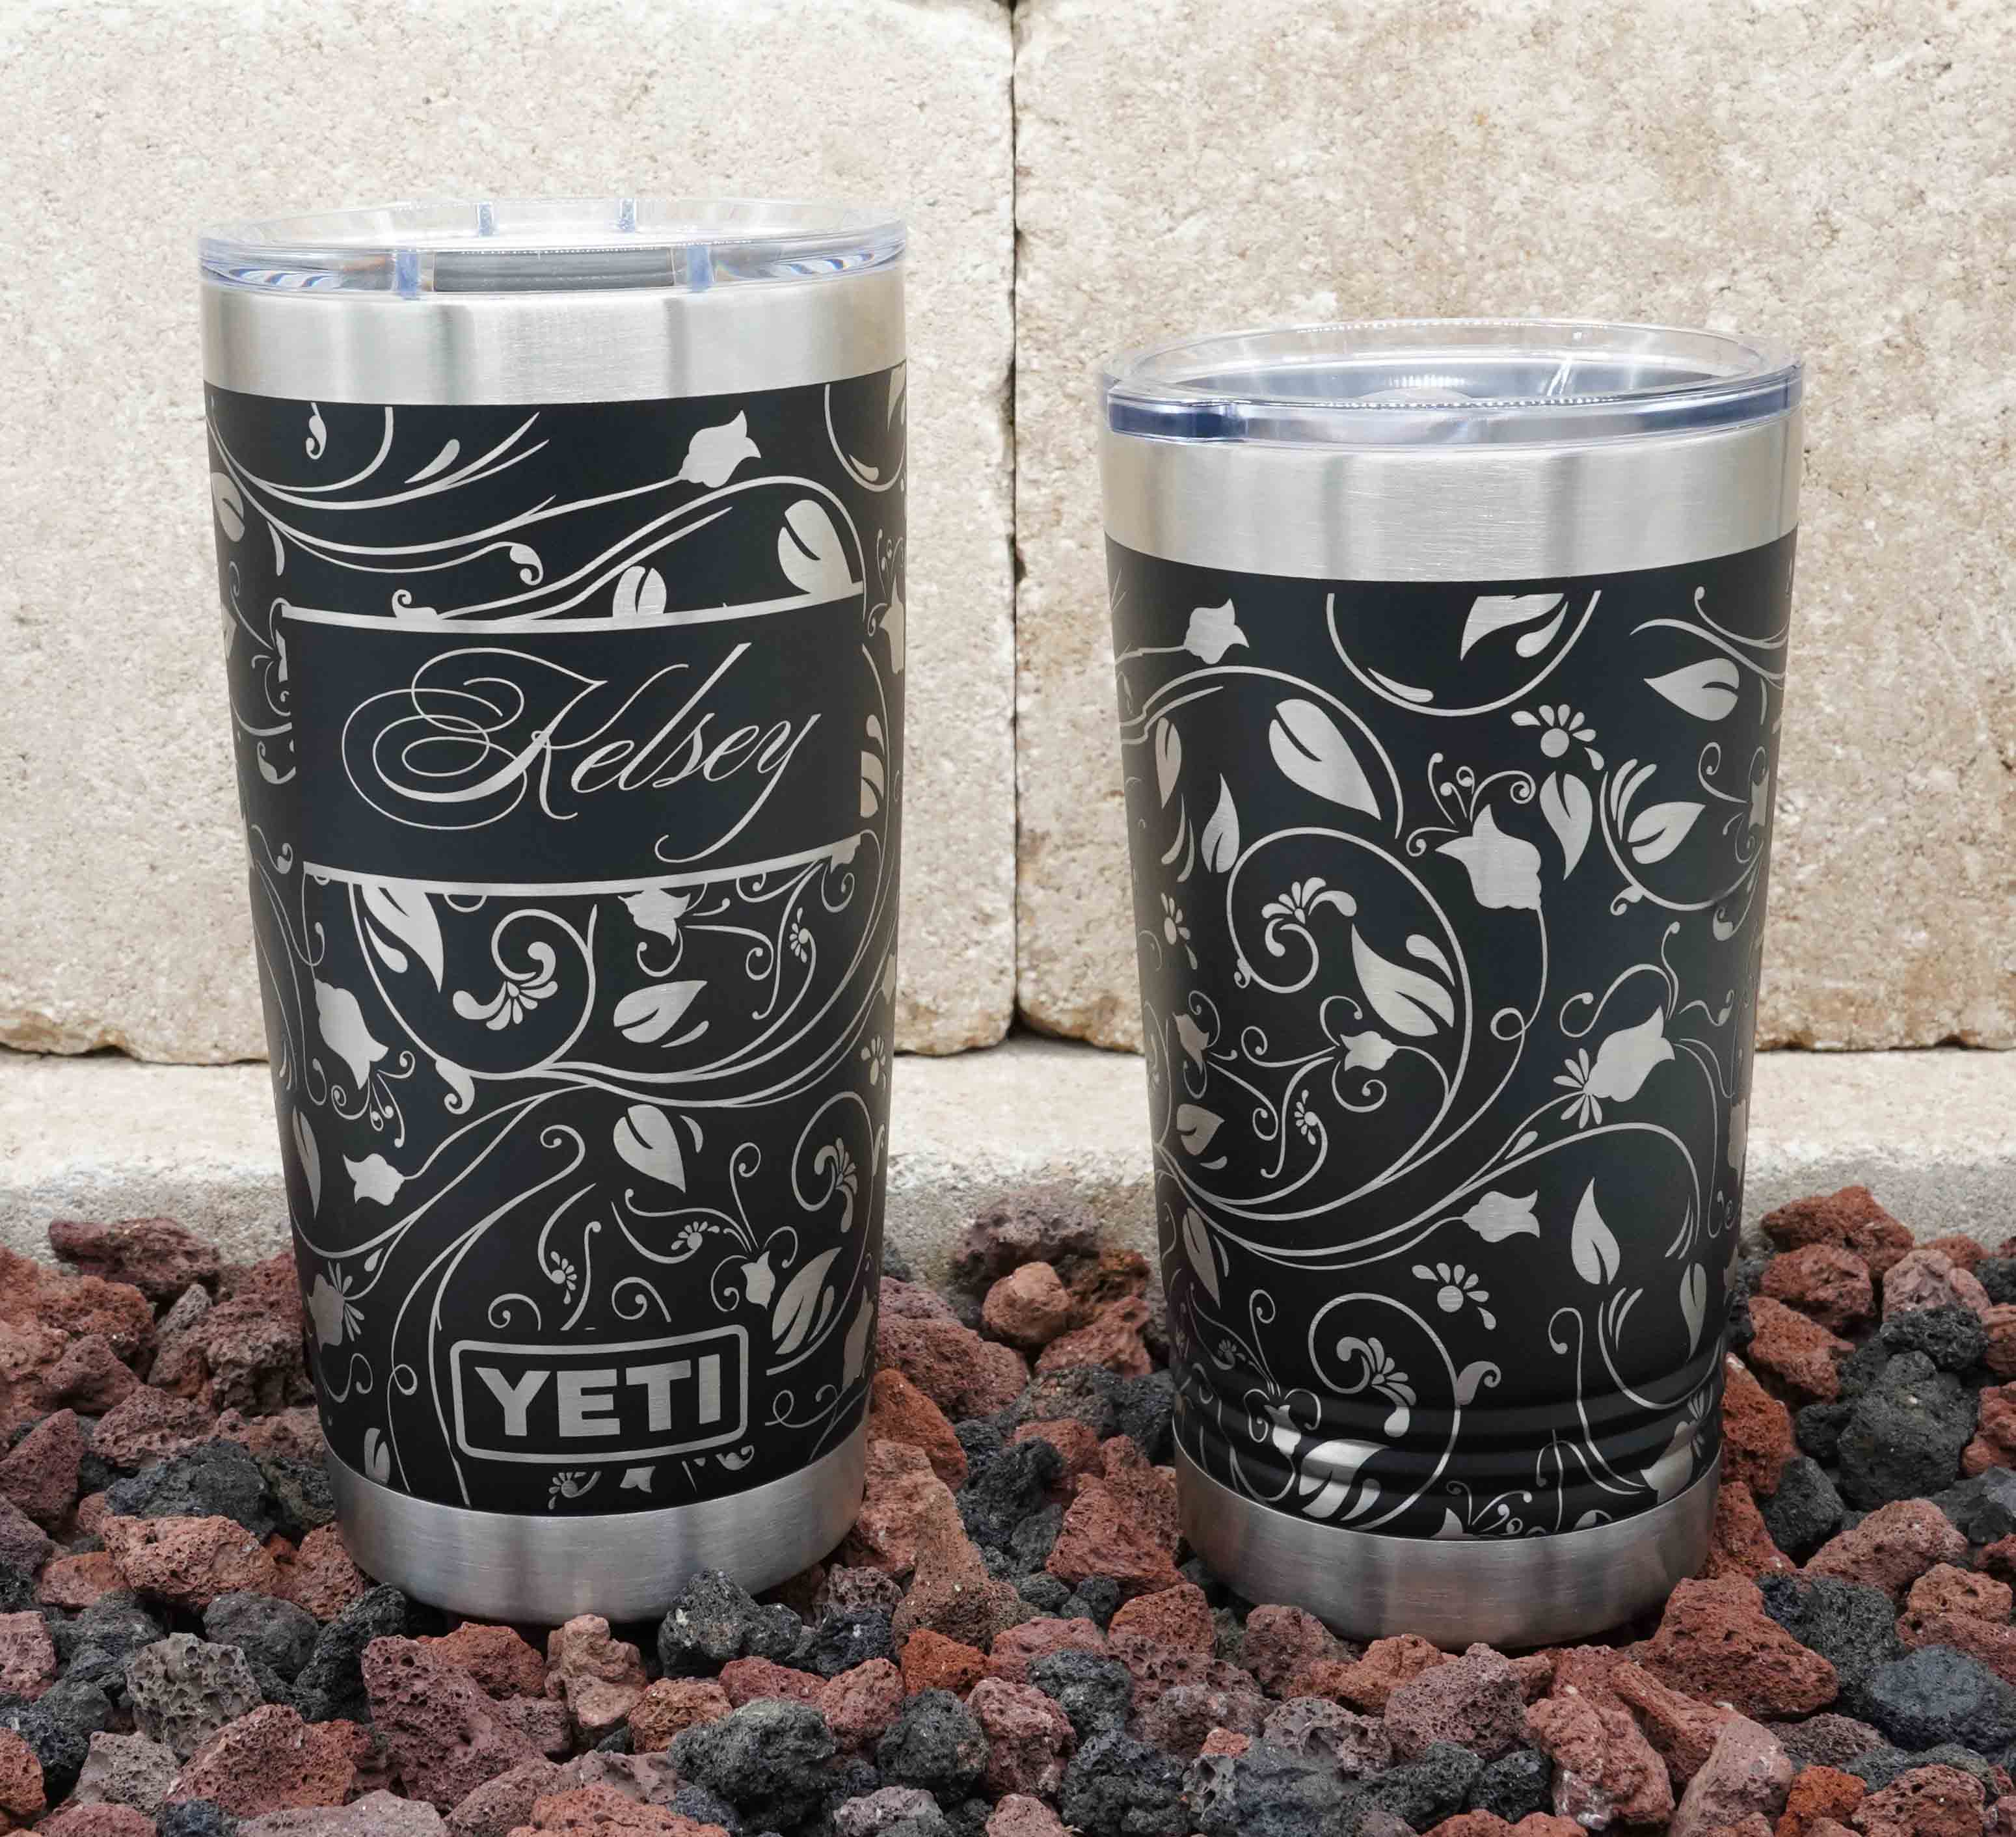  Personalized Yeti Tumbler Additional Colors Available - Engraved  Yeti Rambler - 20 oz Yeti - 30 oz Yeti - Personalized Yeti - Yeti Gift -  Laser Engraved Yeti - Yeti Tumbler - Yeti Cup : Handmade Products